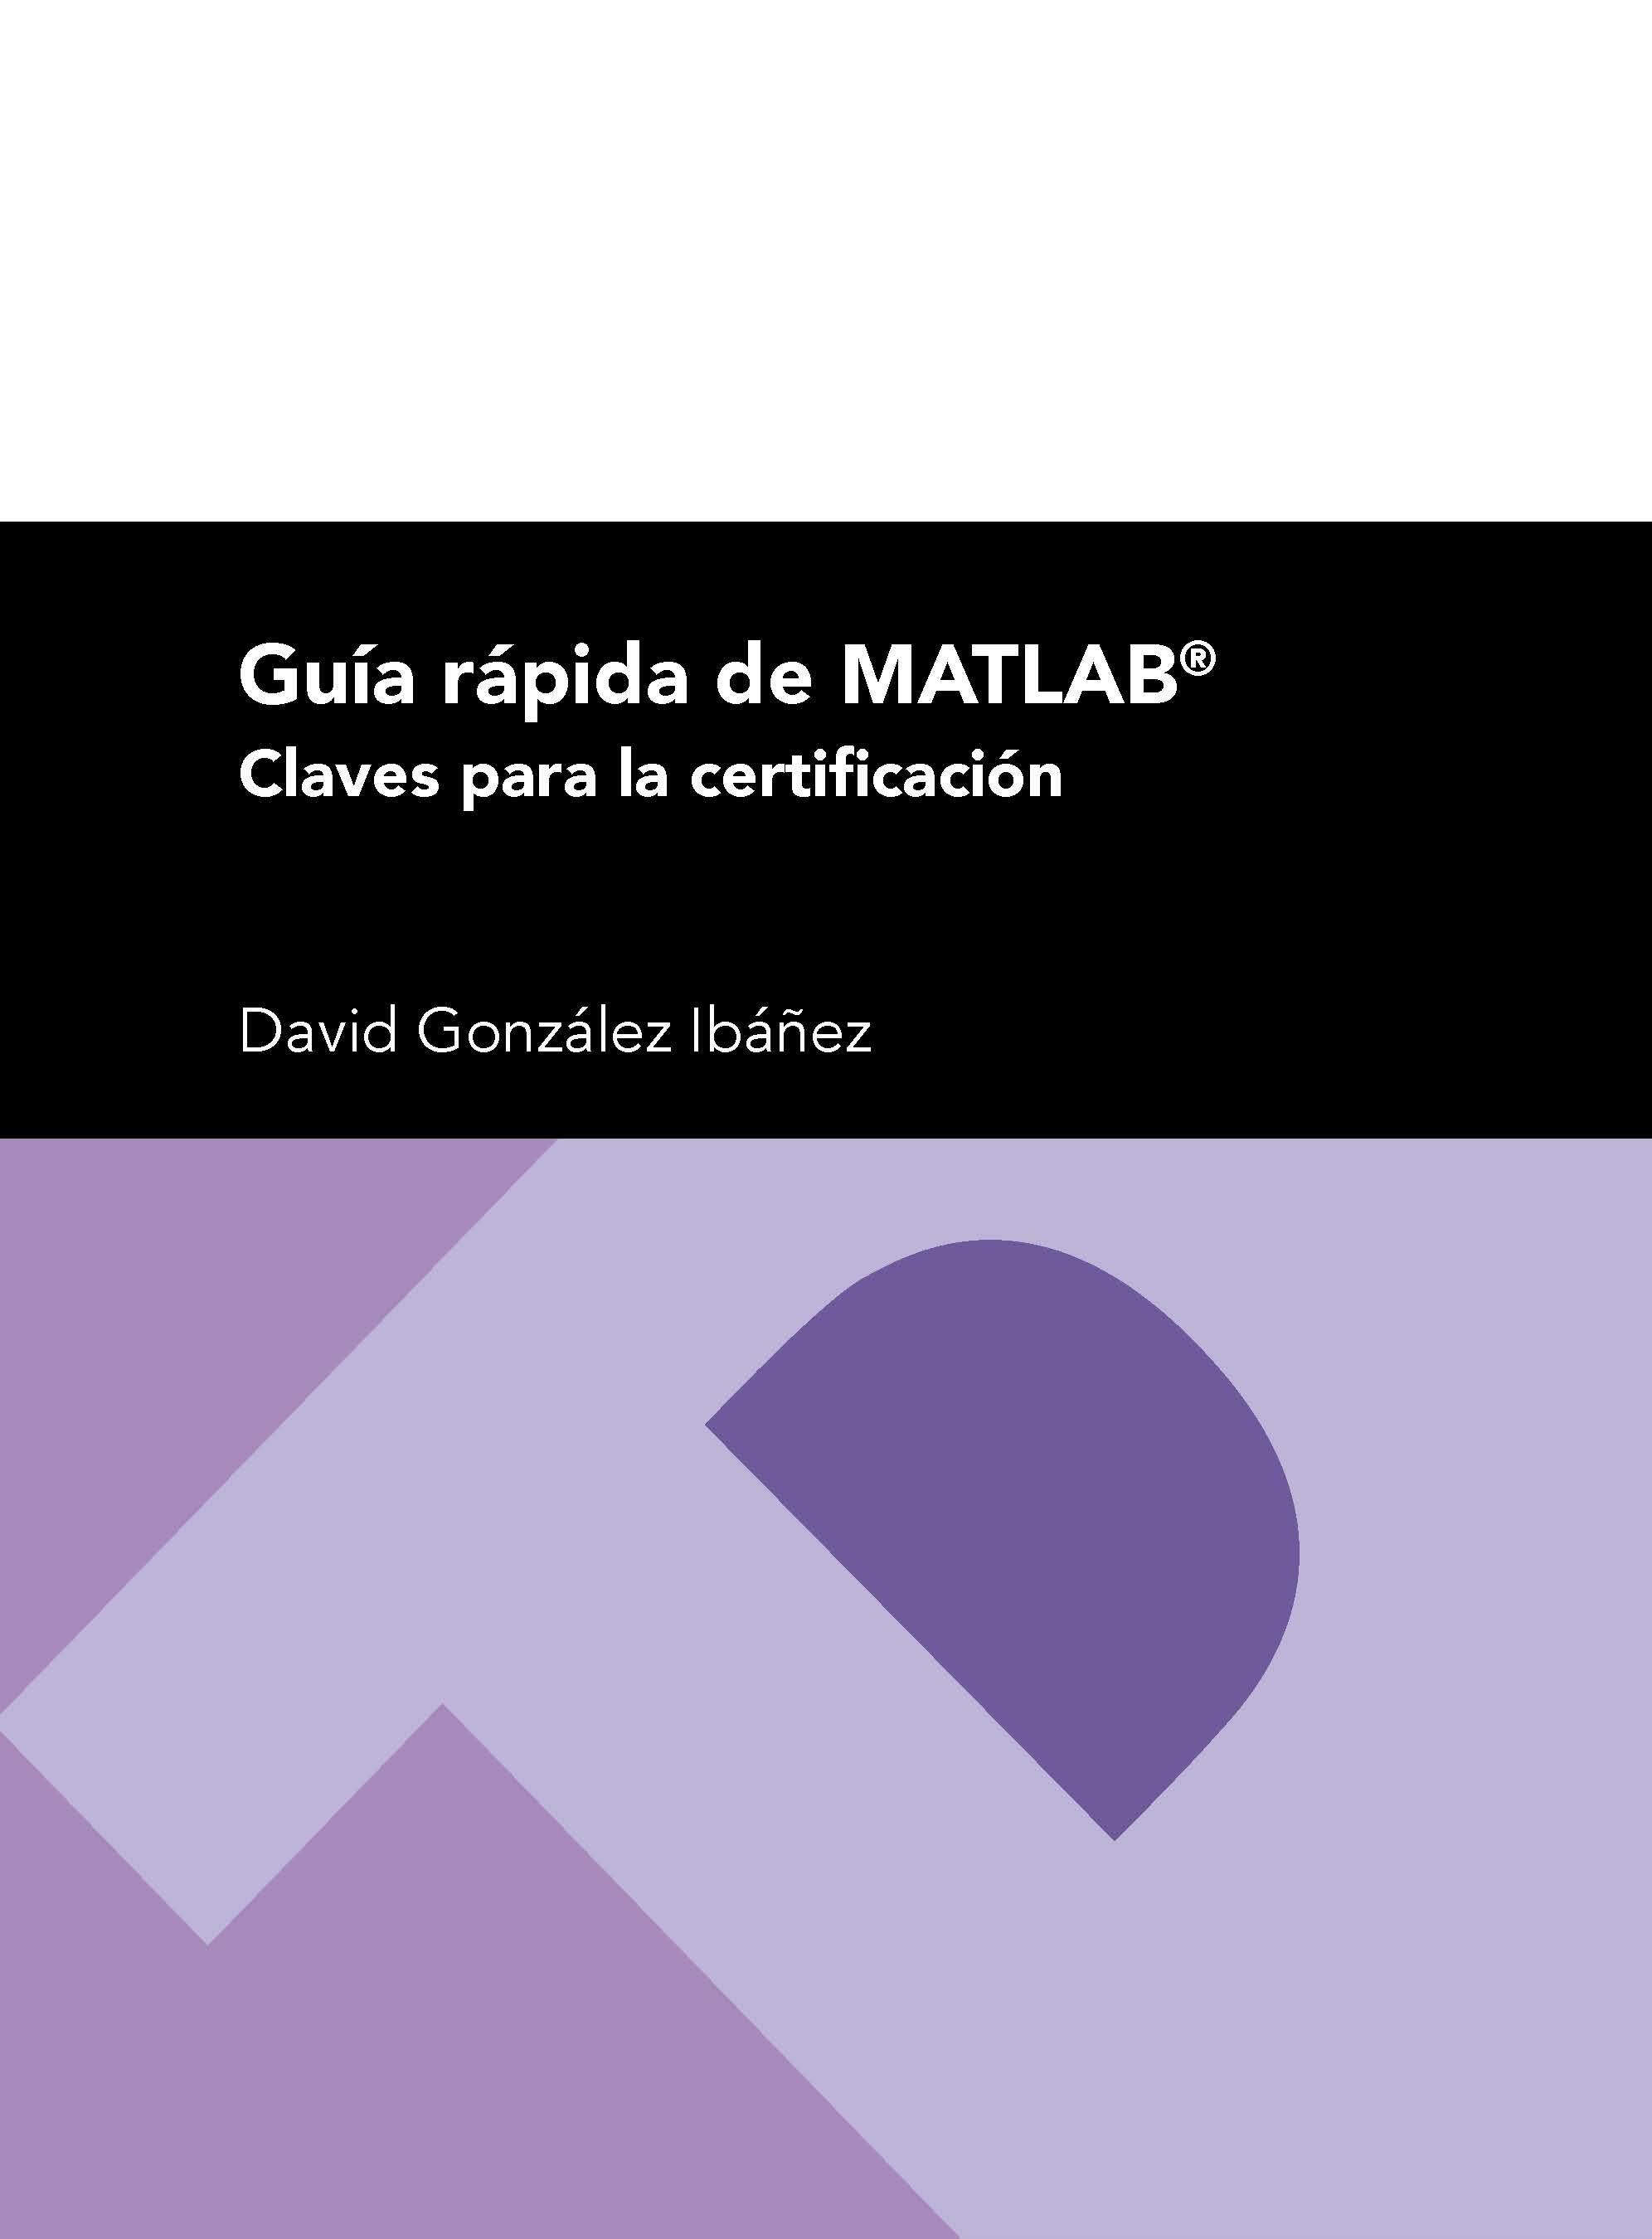 Guía rápida de MATLAB "Claves para la certificación"